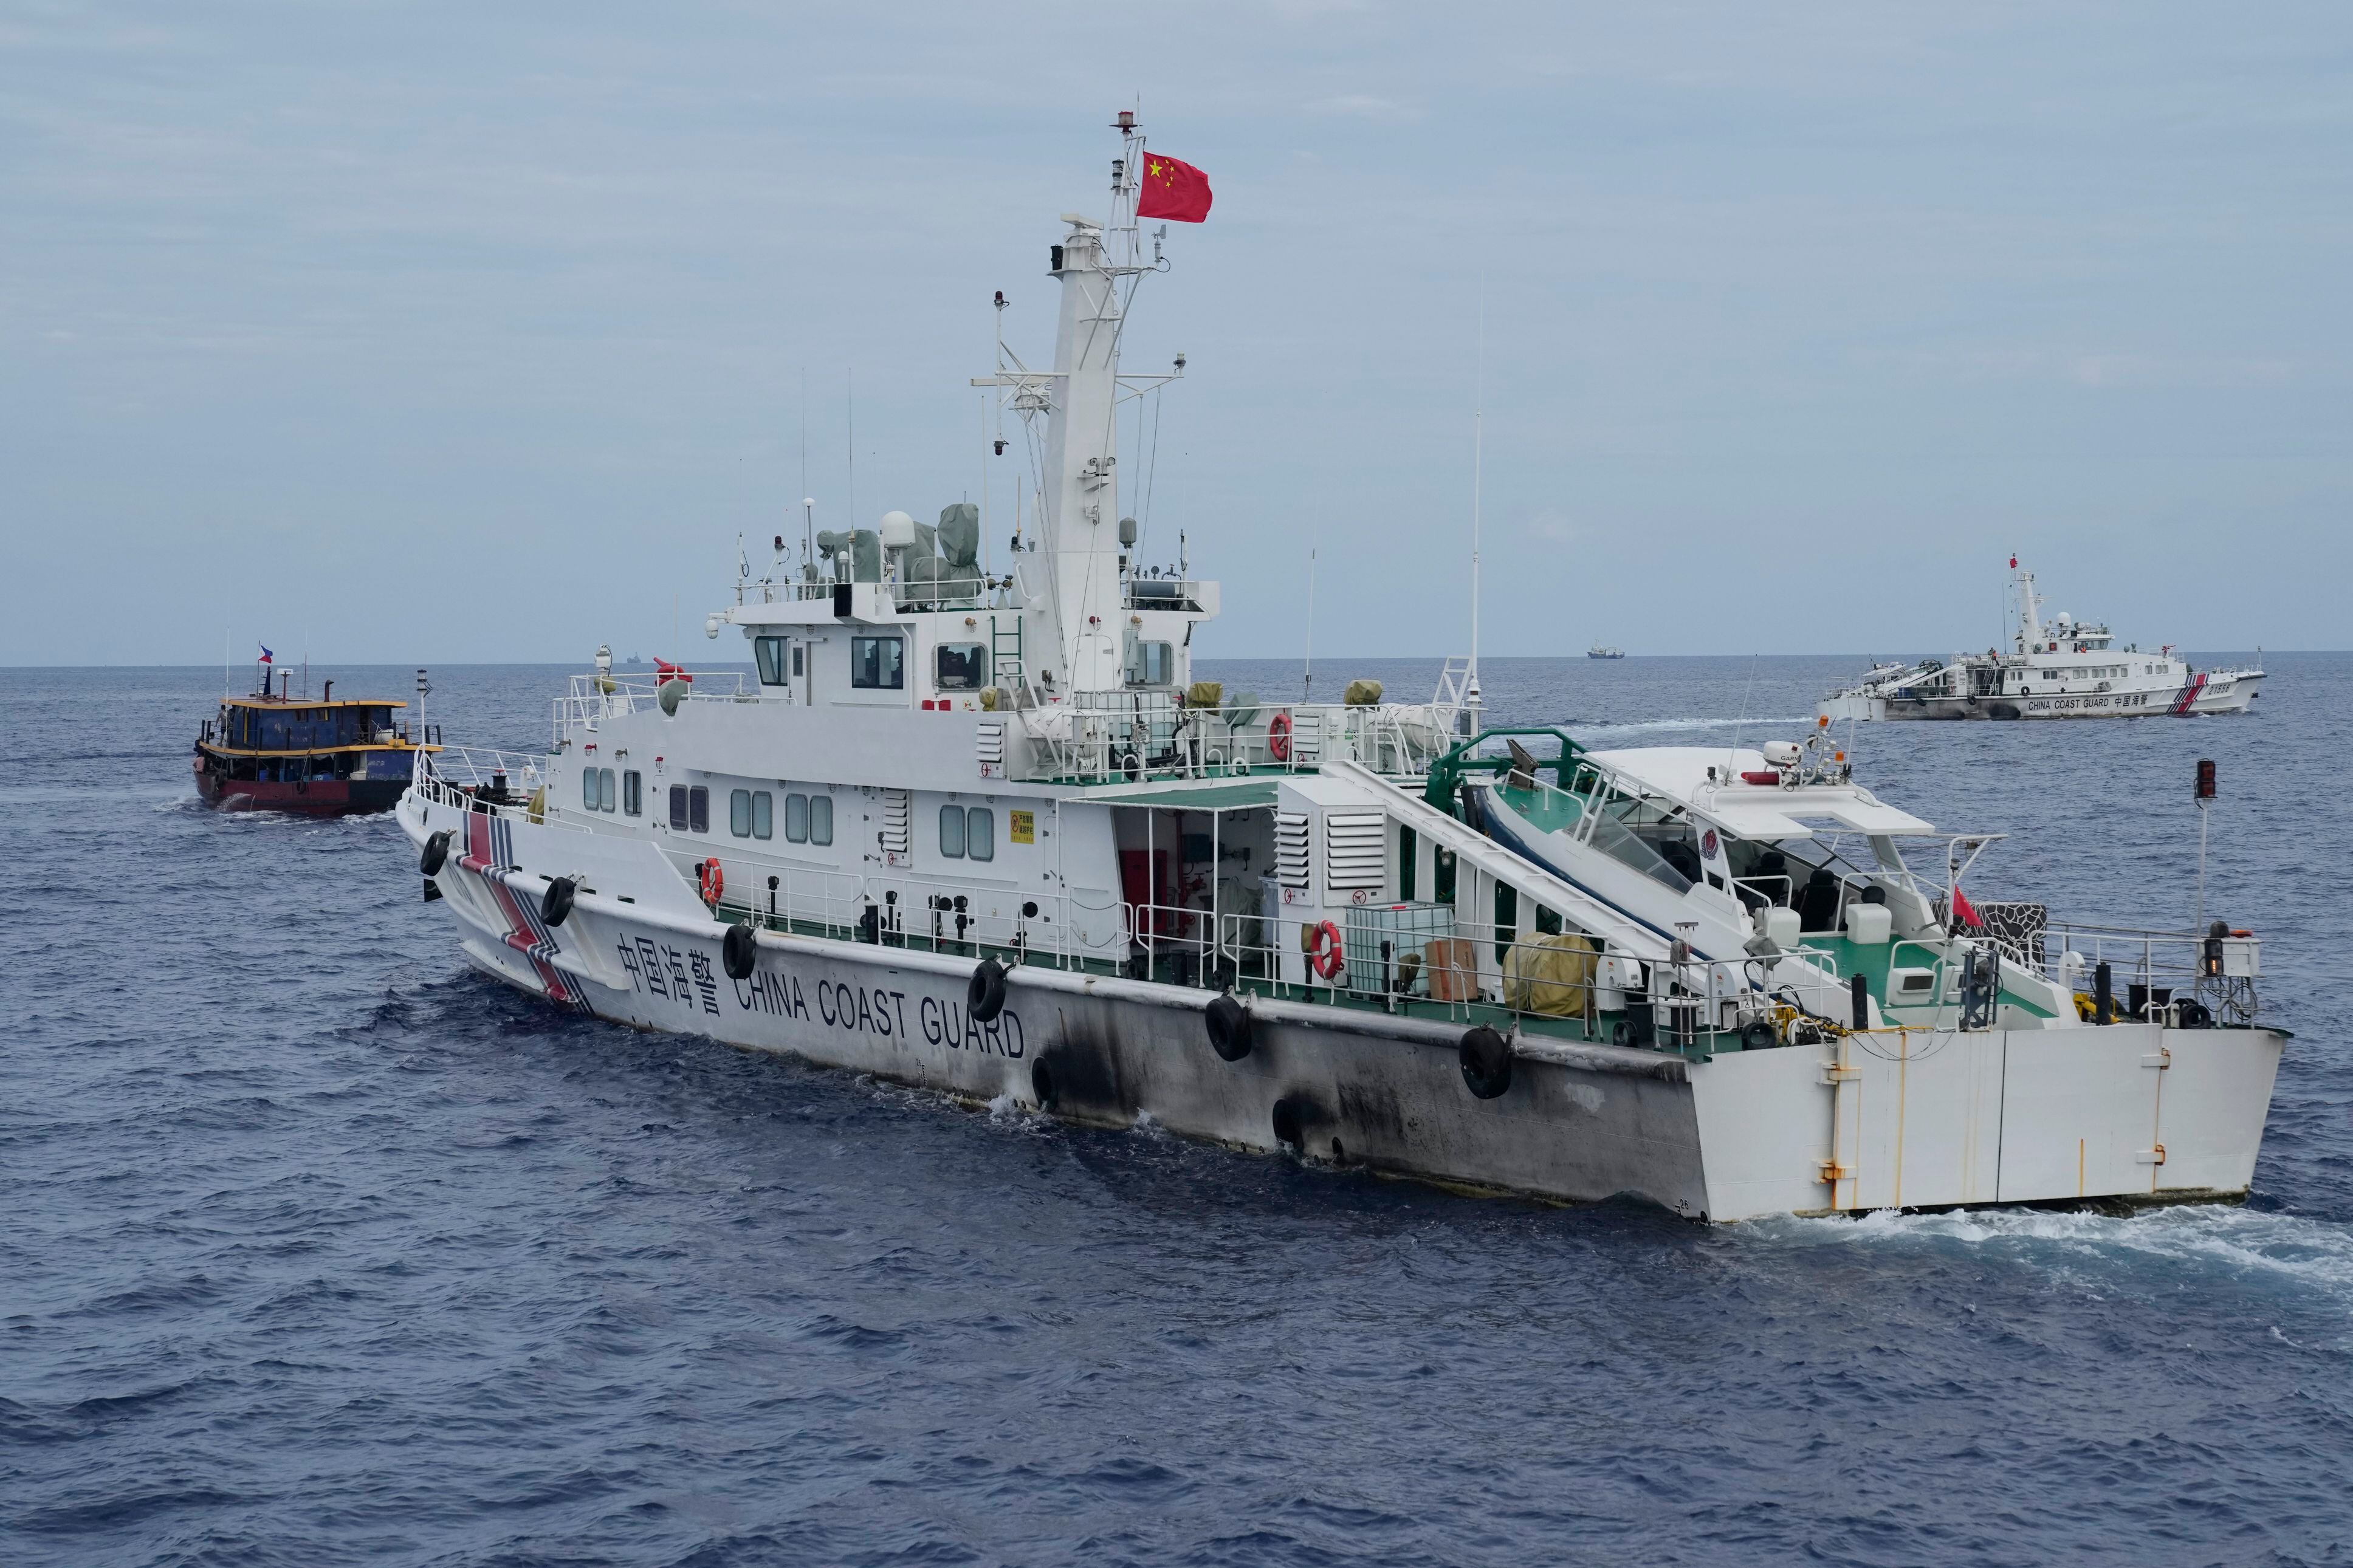 El régimen de China reclama casi todo el mar Meridional, incluidos los archipiélagos Paracel y Spratly, donde tiene disputas territoriales con países como Filipinas, Vietnam y Malasia. (AP)